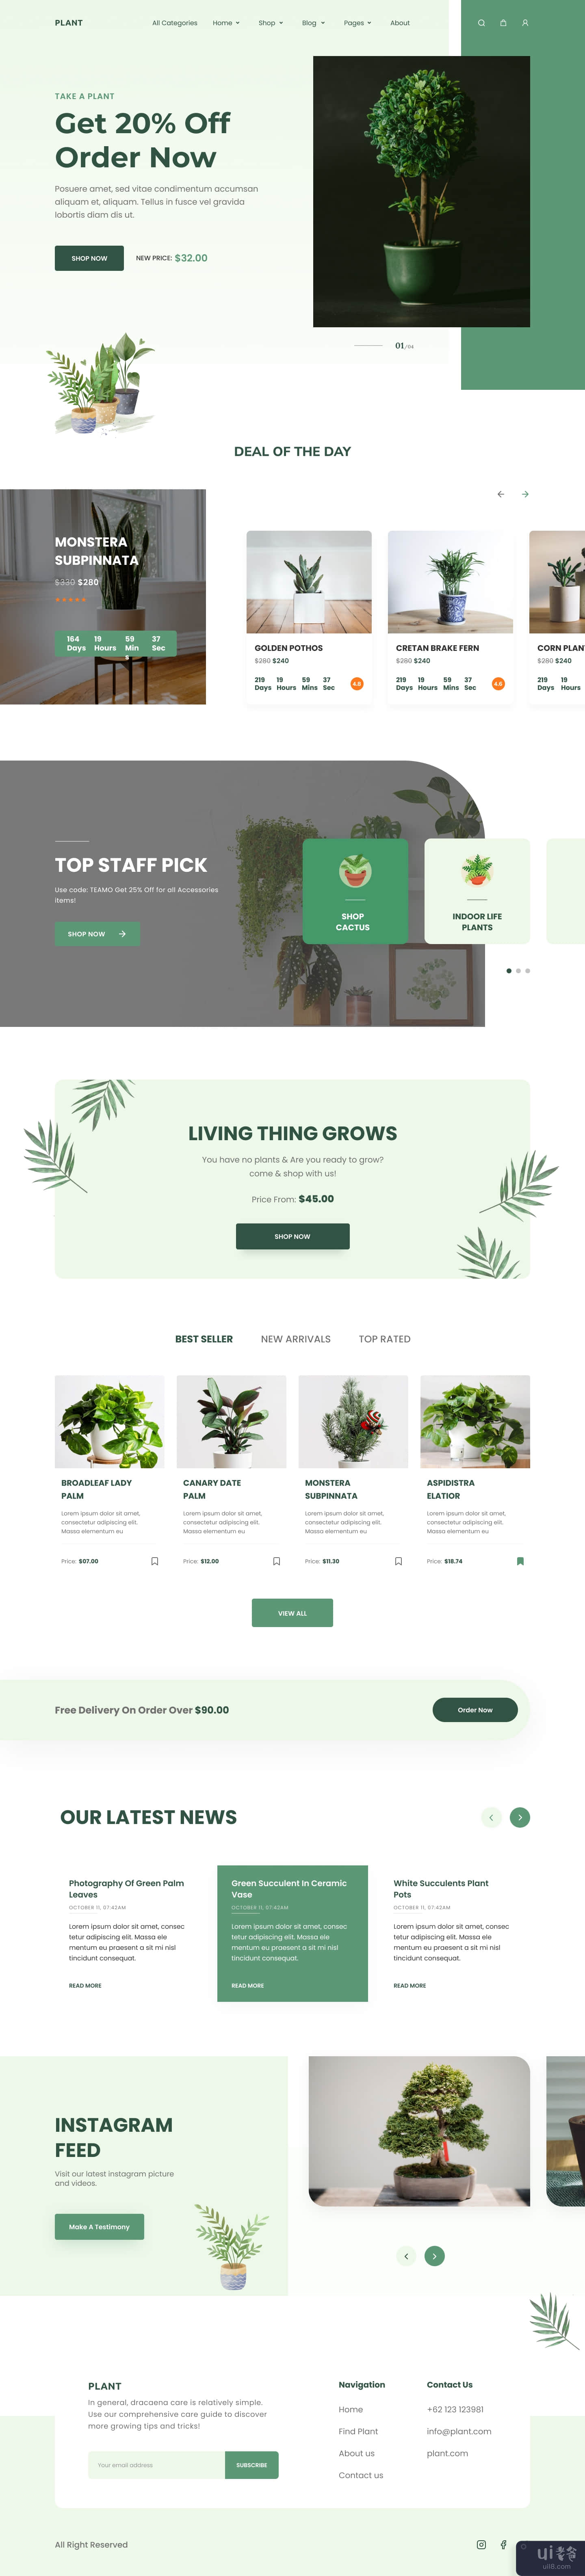 Plant Shop - 登陆页面设计(Plant Shop - Landing Page Design)插图3